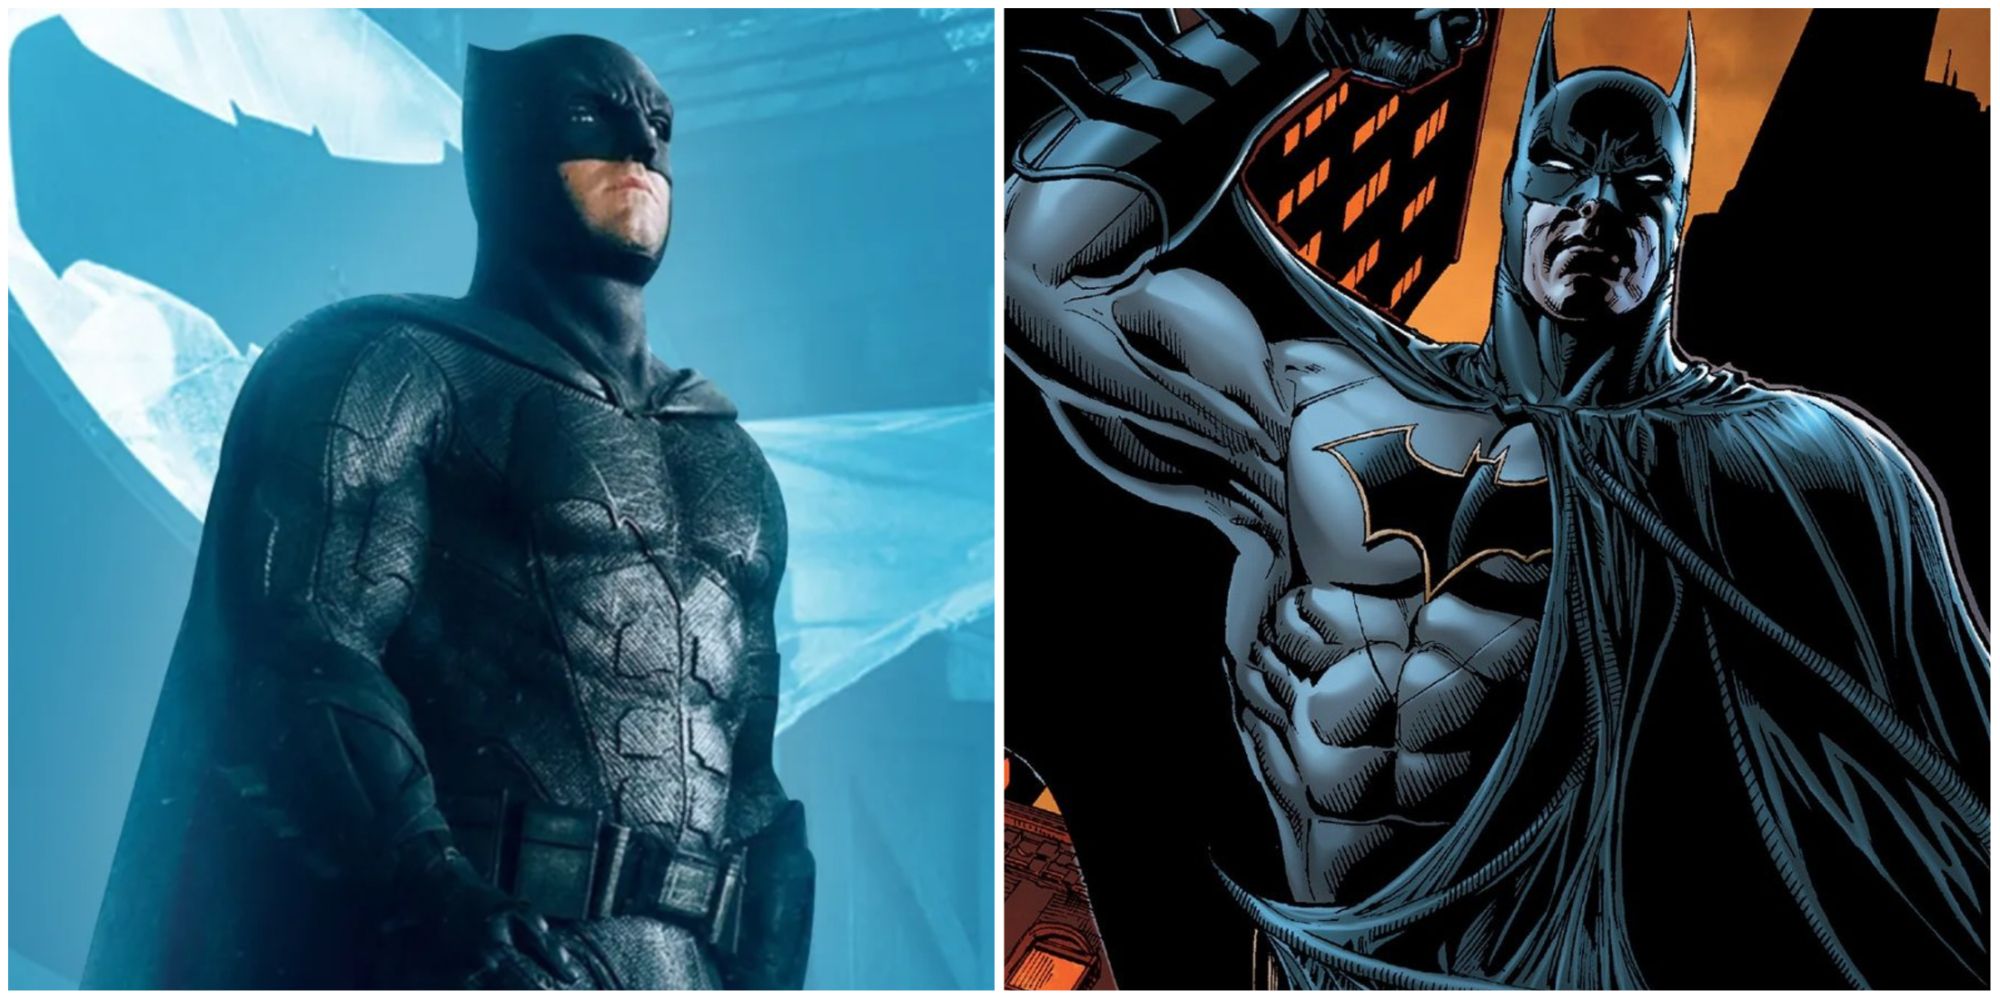 A split image of Ben Affleck's Batman and Batman in DC Comics